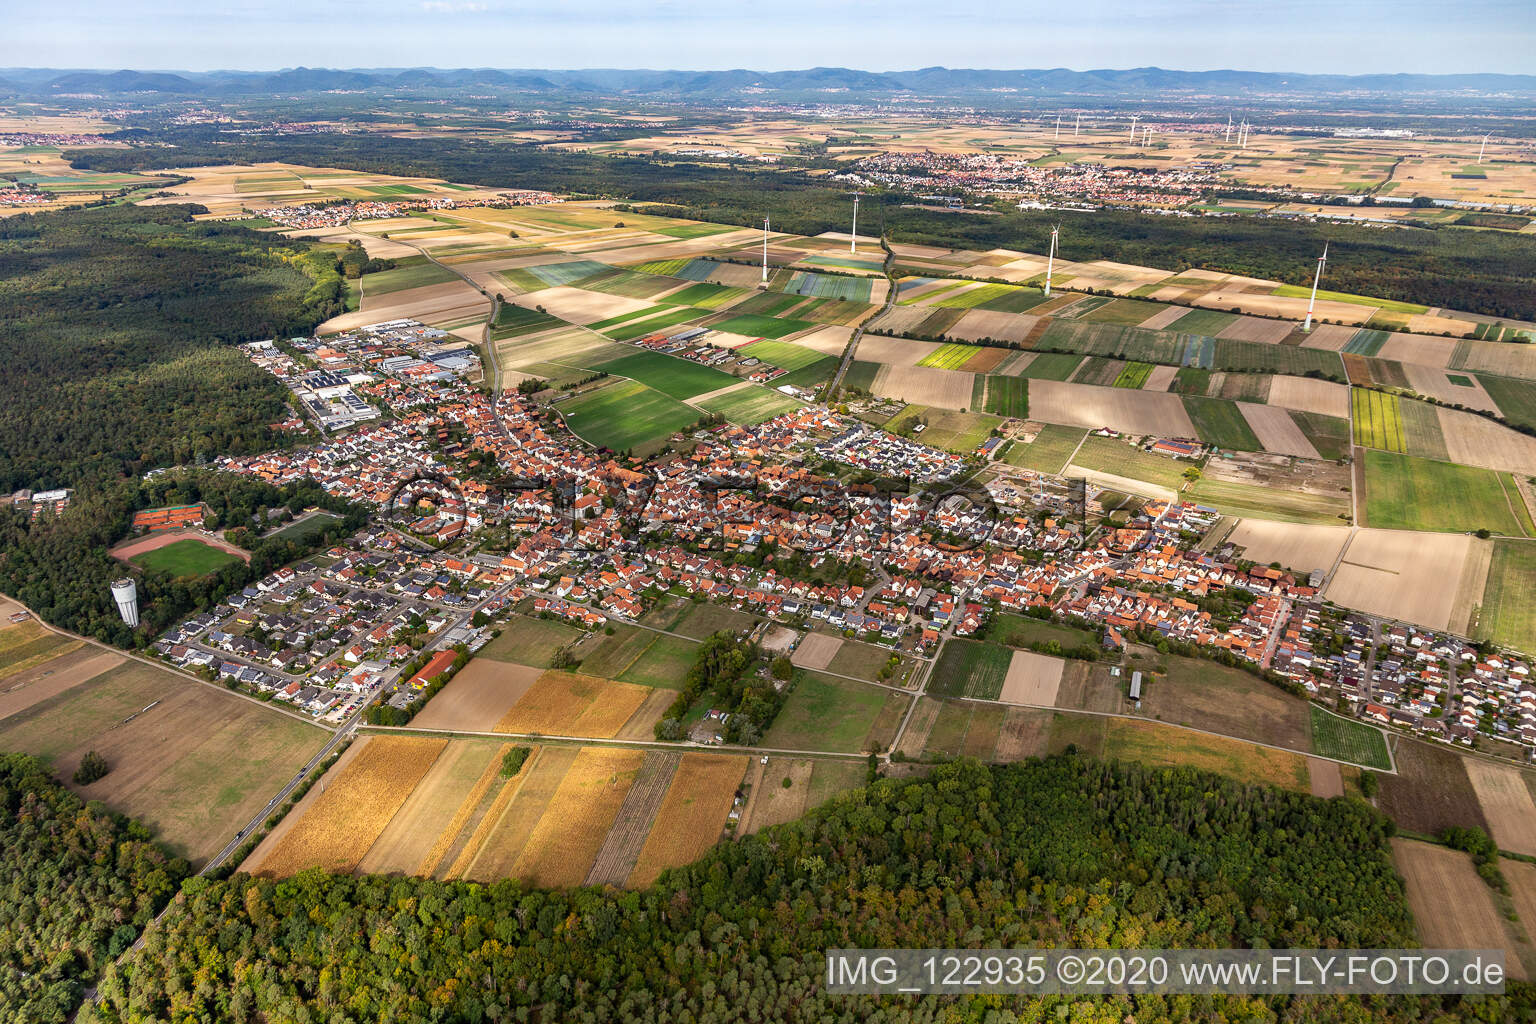 Vue aérienne de Vue sur la commune en bordure de champs agricoles et de zones agricoles à Hatzenbühl dans le département Rhénanie-Palatinat, Allemagne